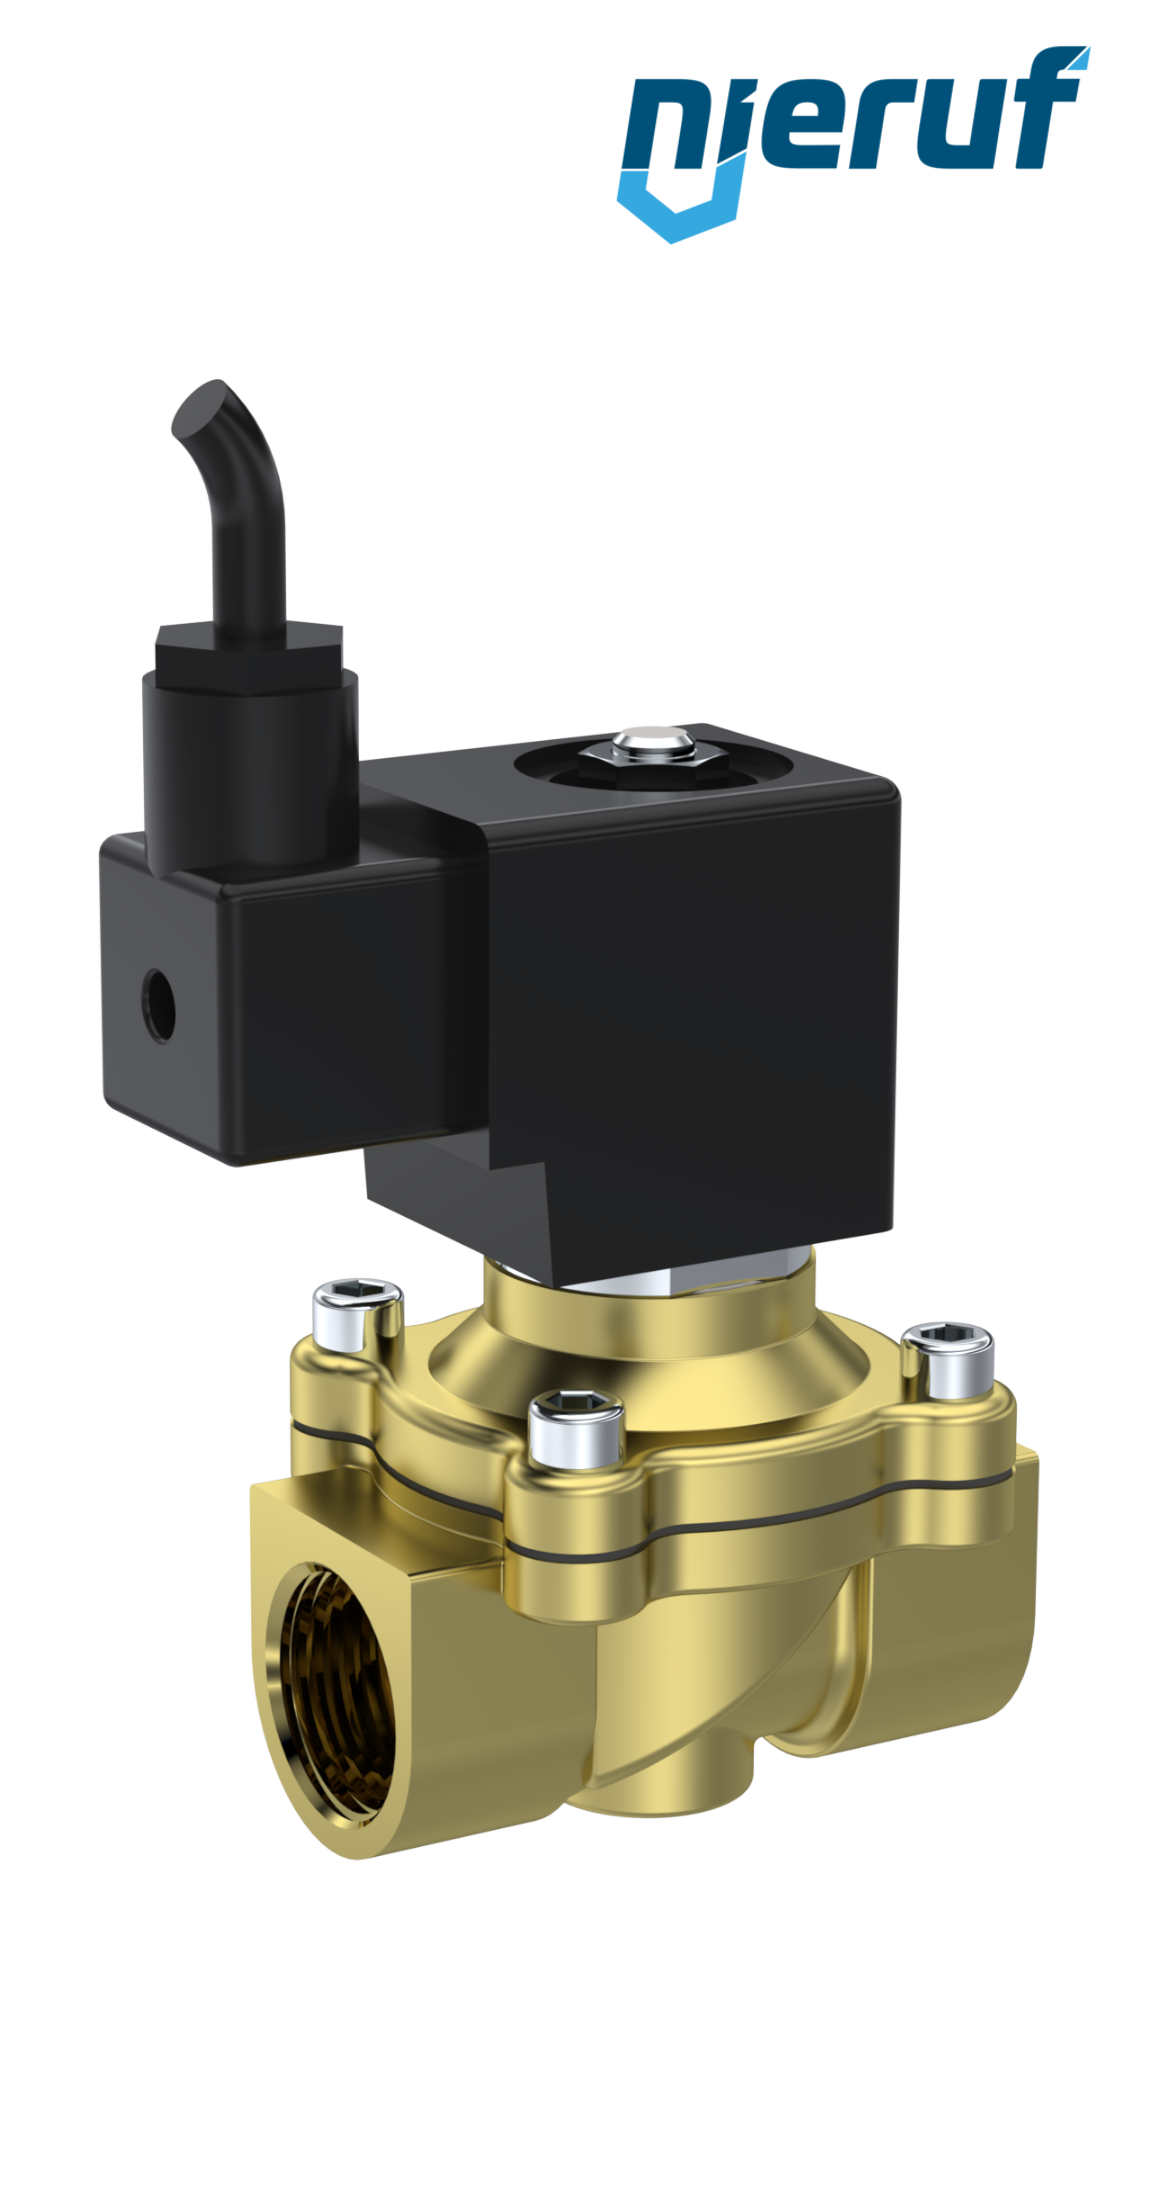 ATEX-Solenoid valve DN20 G 3/4" Inch brass